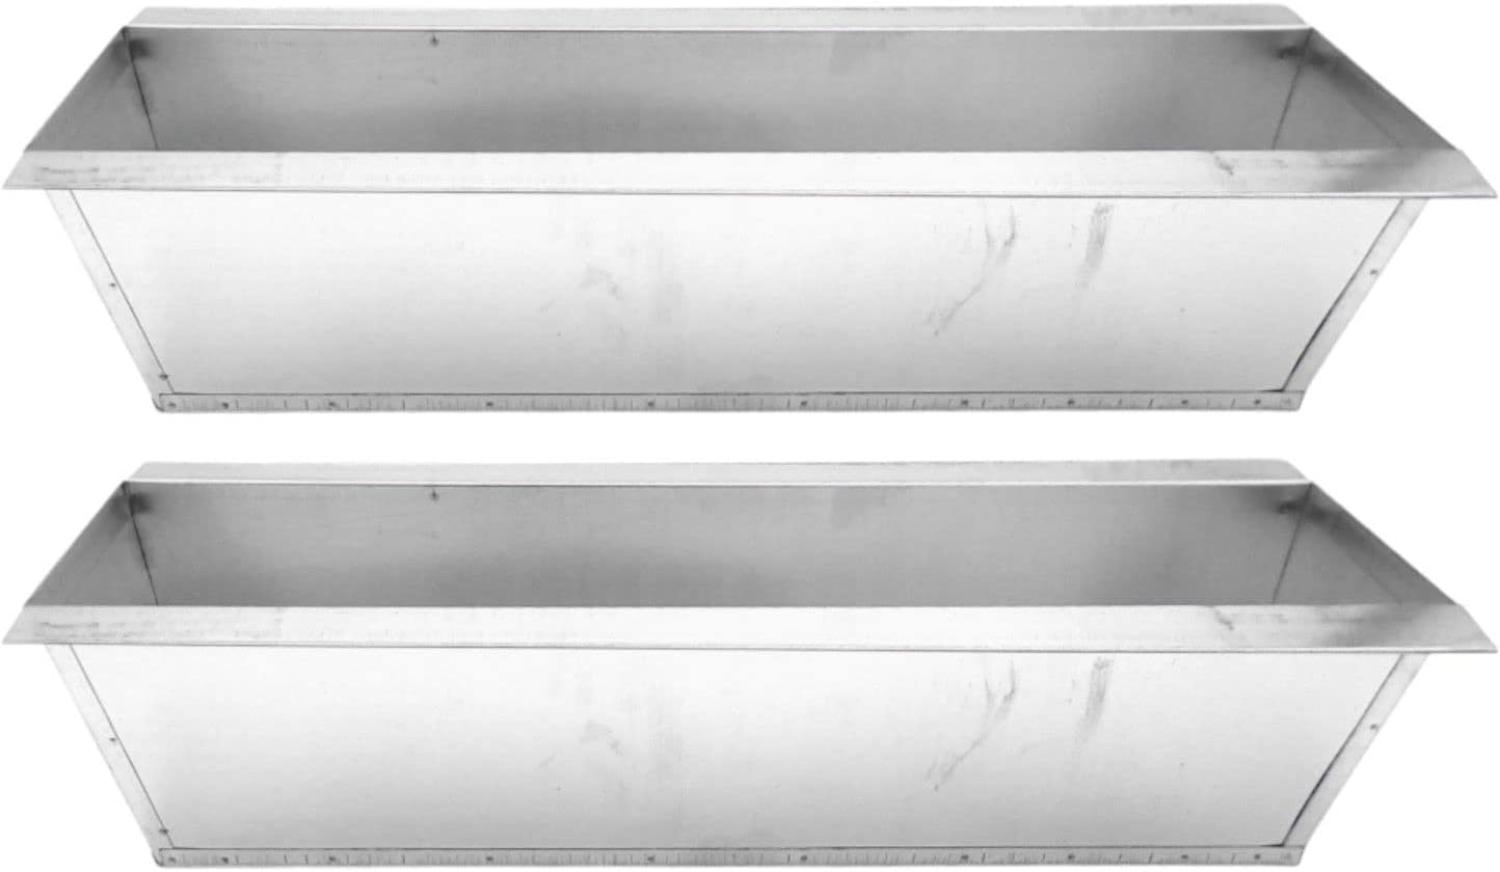 BURI Pflanzkasten für Europaletten 1-6 Stück verzinkt schwarz Balkon Blumenkasten Metall verzinkt - 2 Stück Bild 1